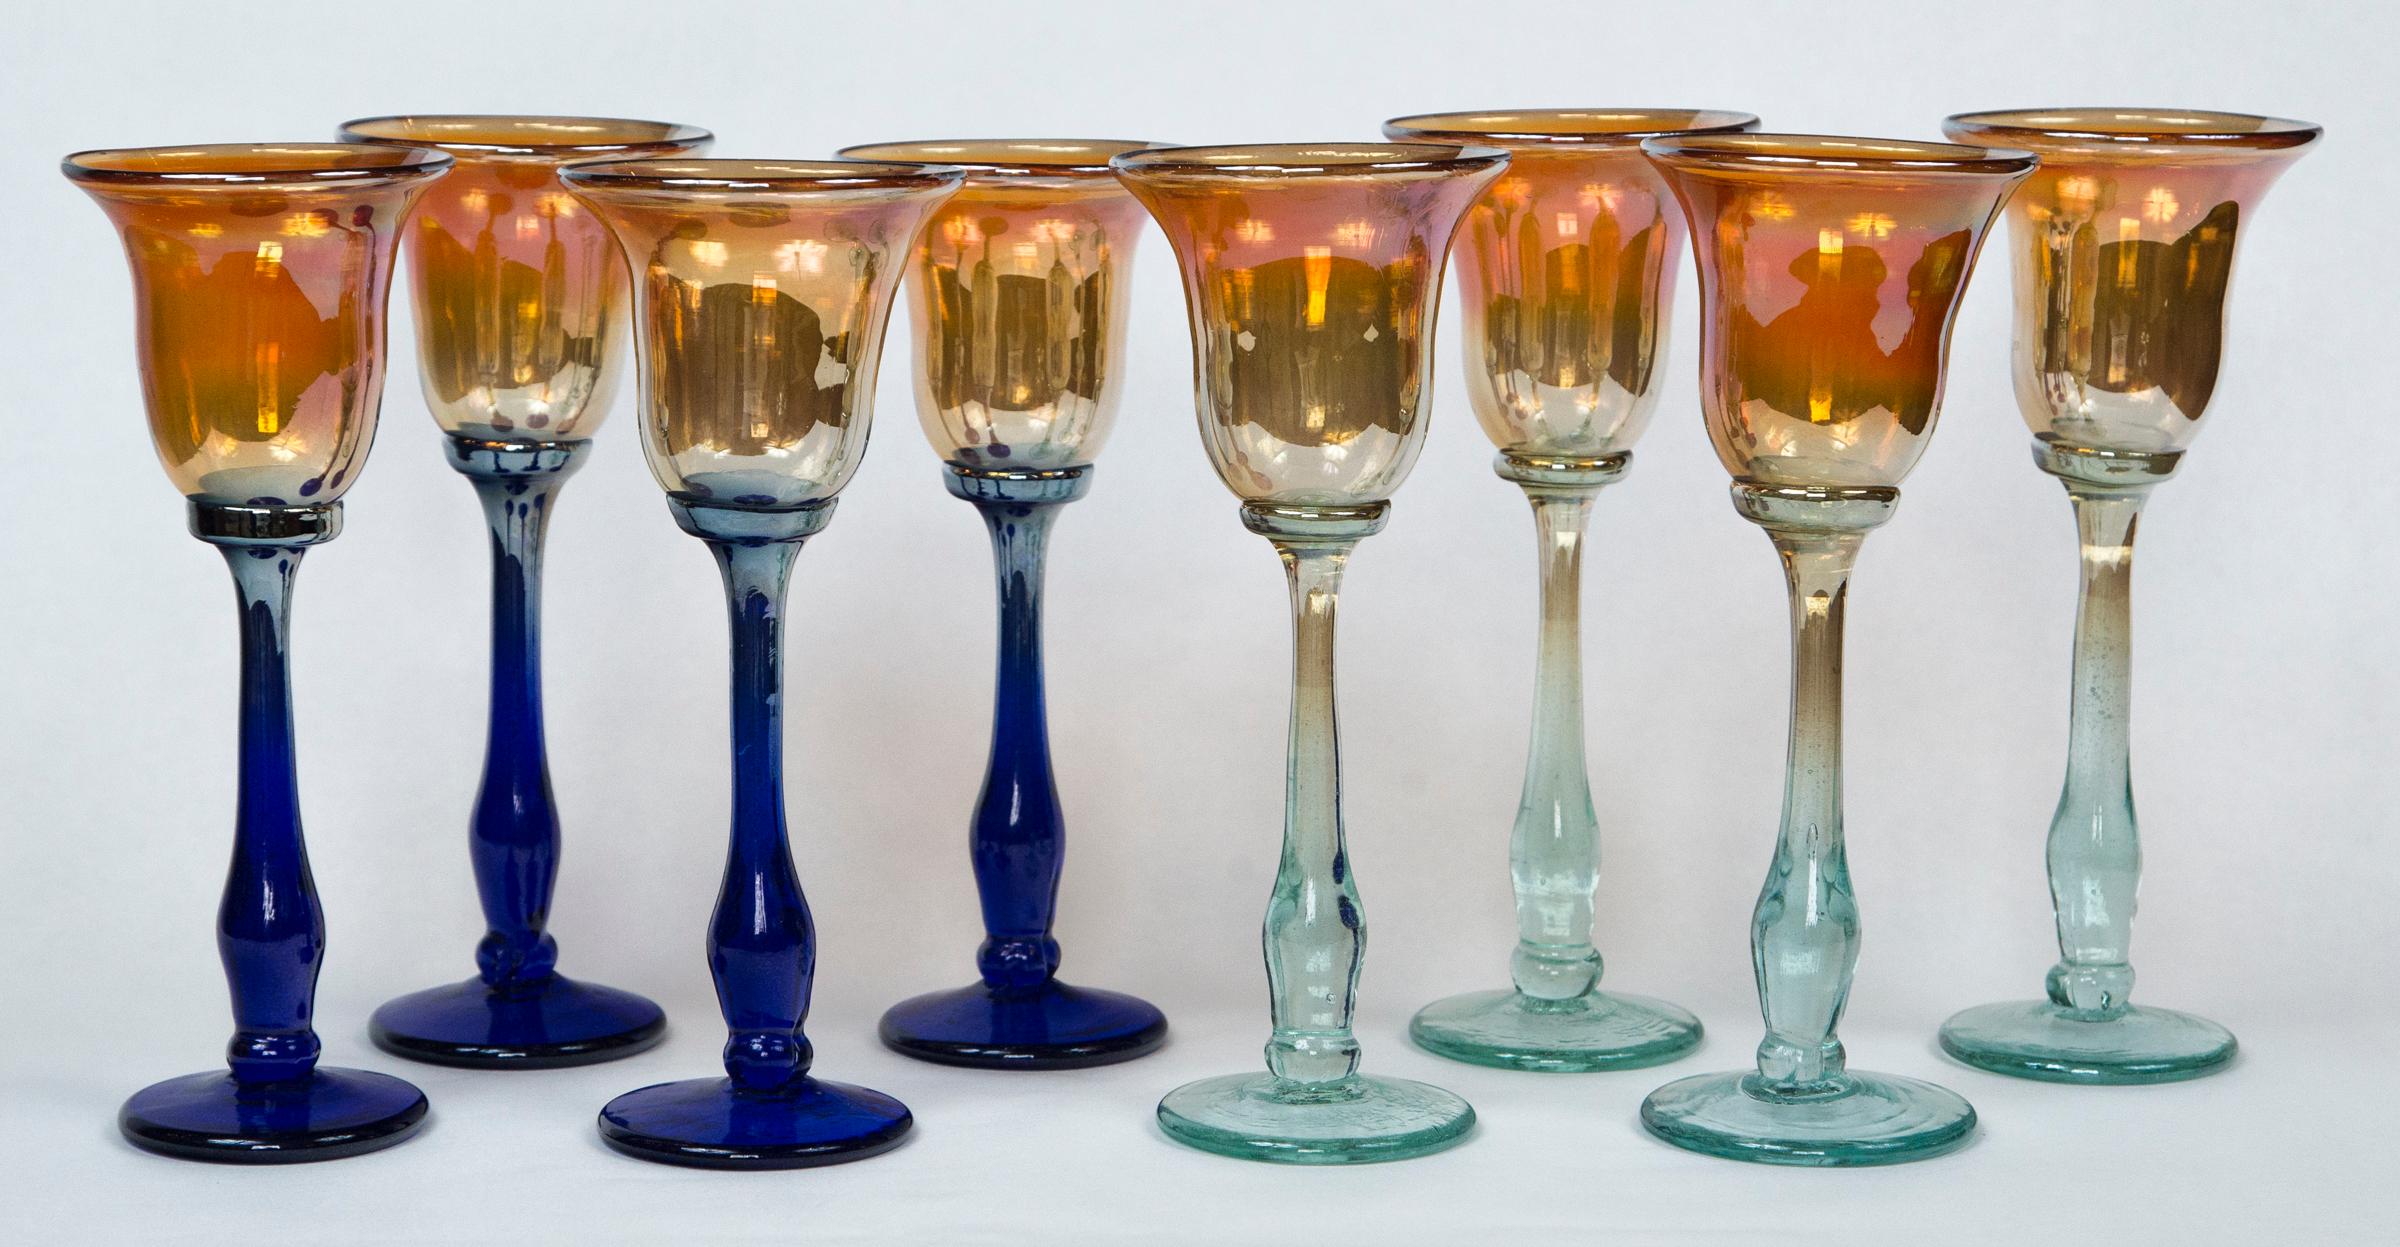 The set comprises 4 dark blue stemmed and 4 pale blue stemmed wine glasses. The 